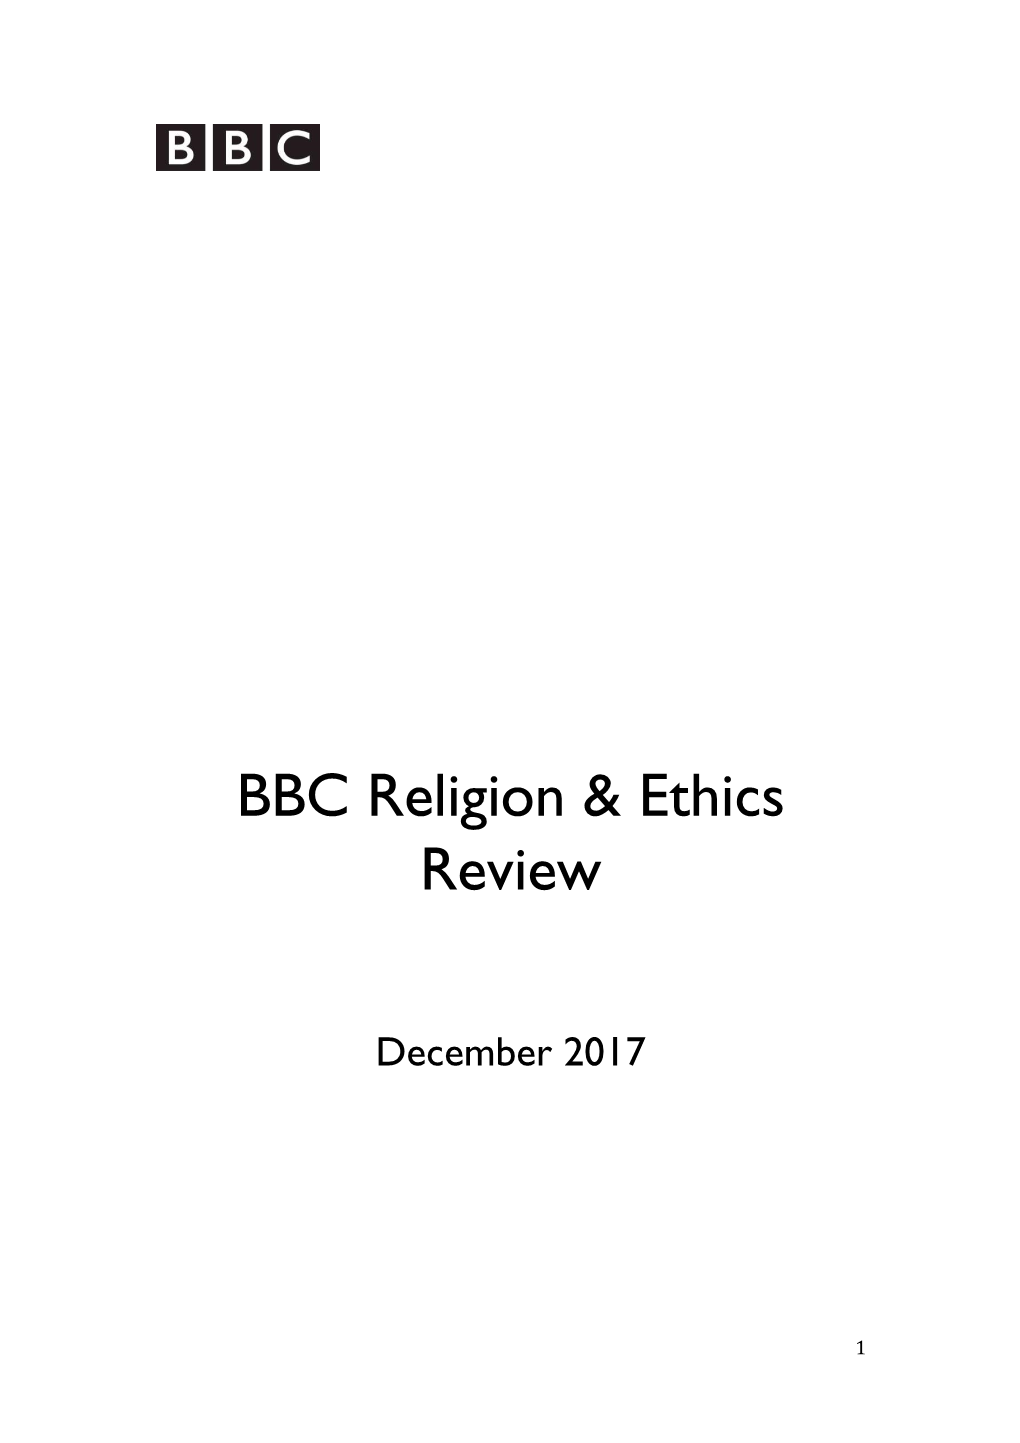 BBC Religion & Ethics Review